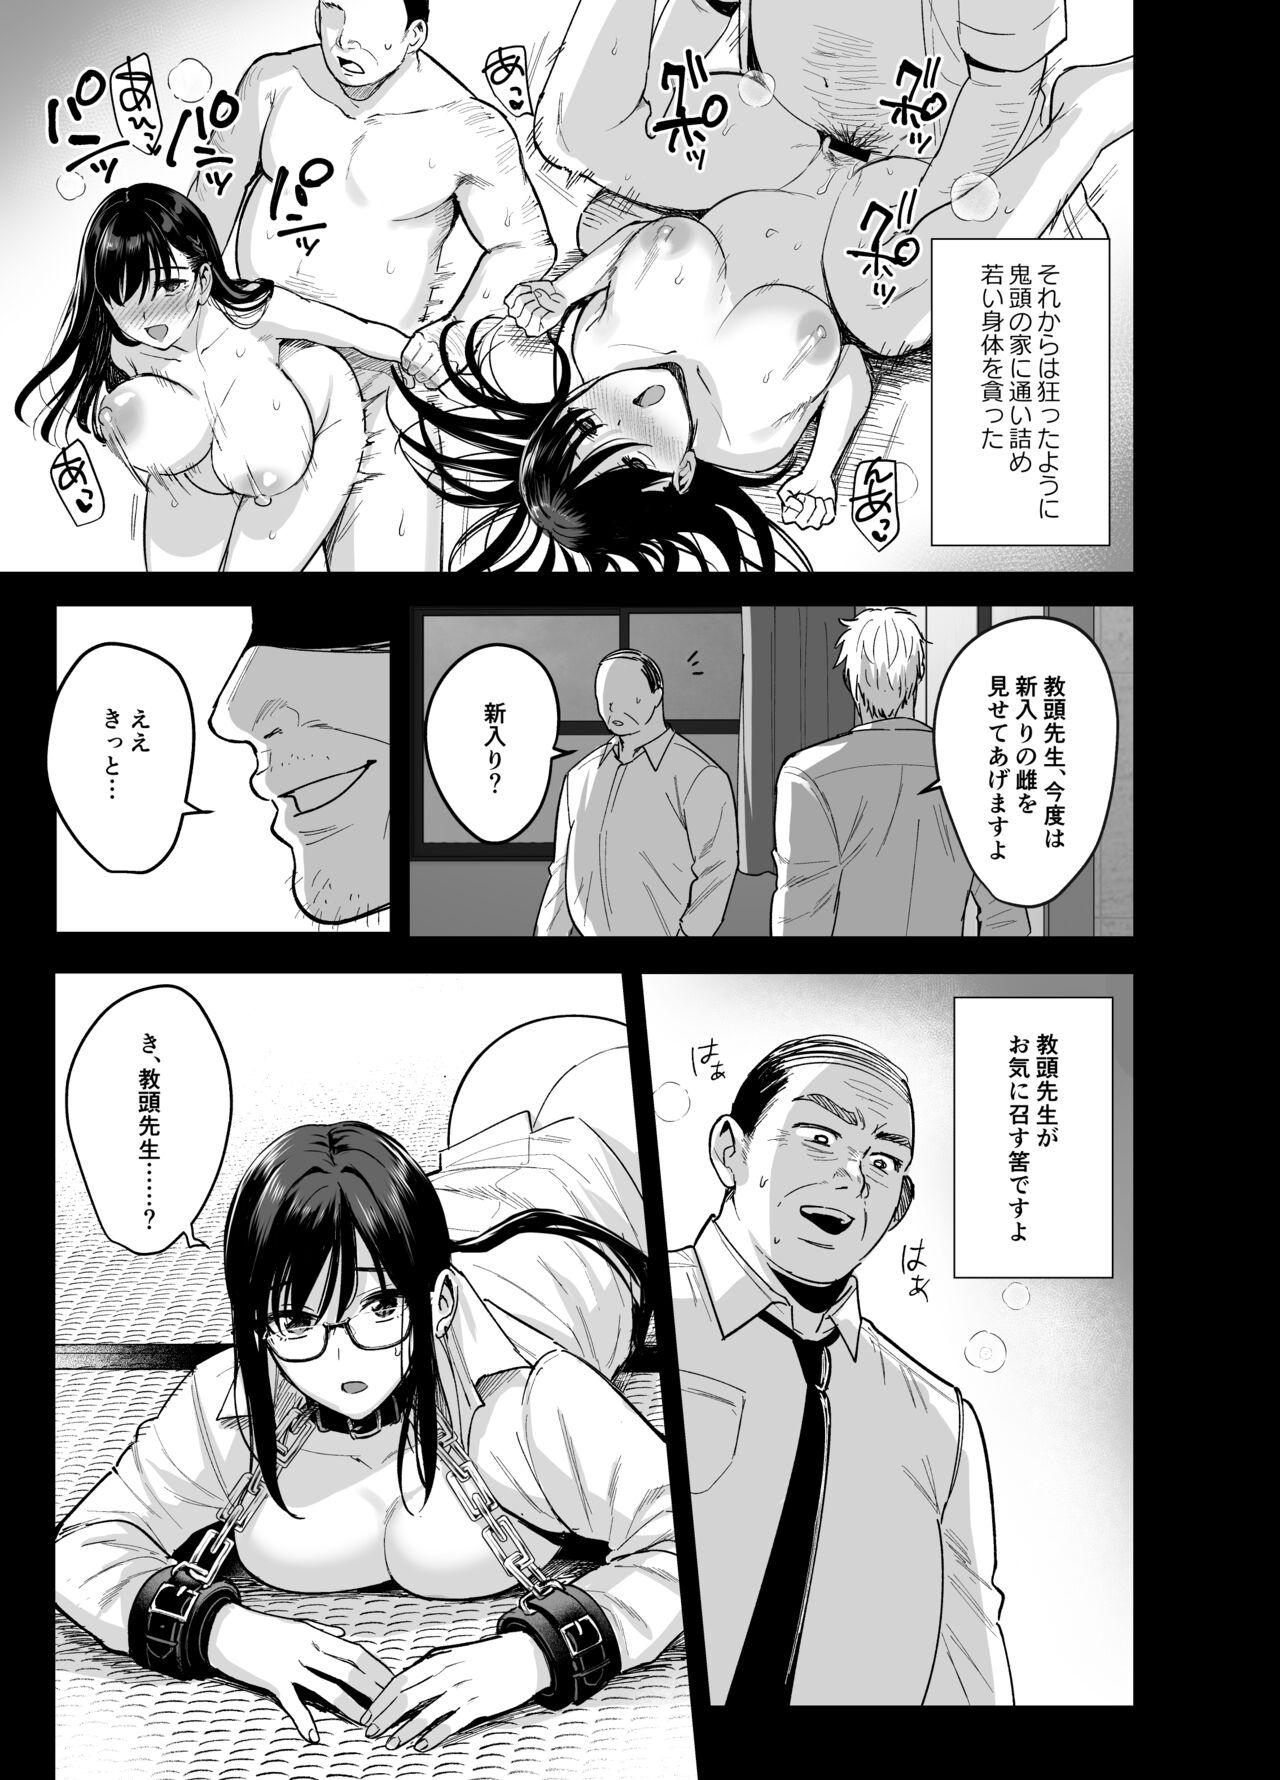 Monstercock Toshoshitsu no Kanojo 6 - Original Shavedpussy - Page 8